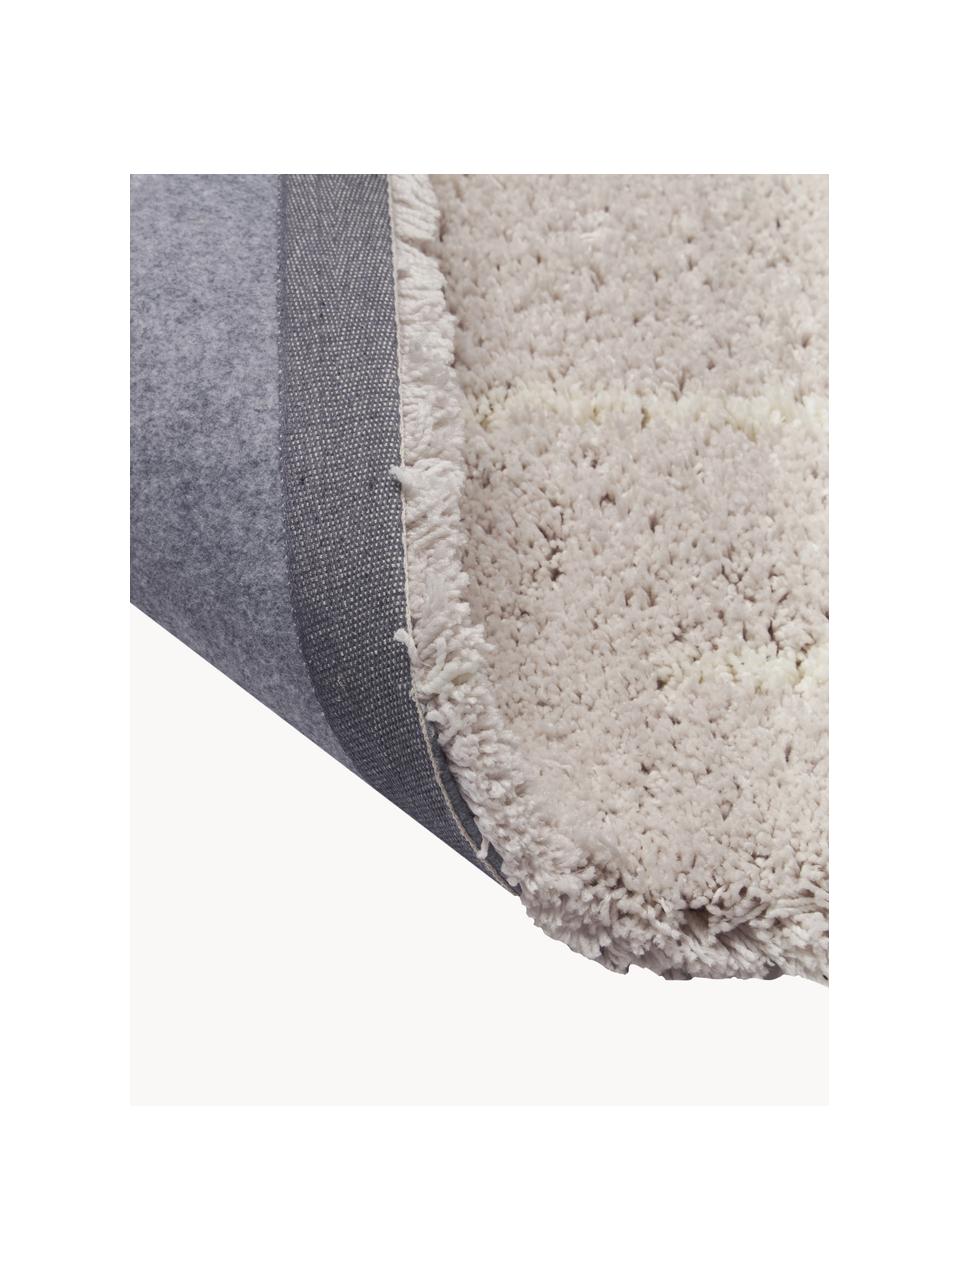 Puszysty ręcznie tuftowany dywan z długim włosiem Amelie, Beżowy, kremowobiały, S 160 x D 230 cm (Rozmiar M)